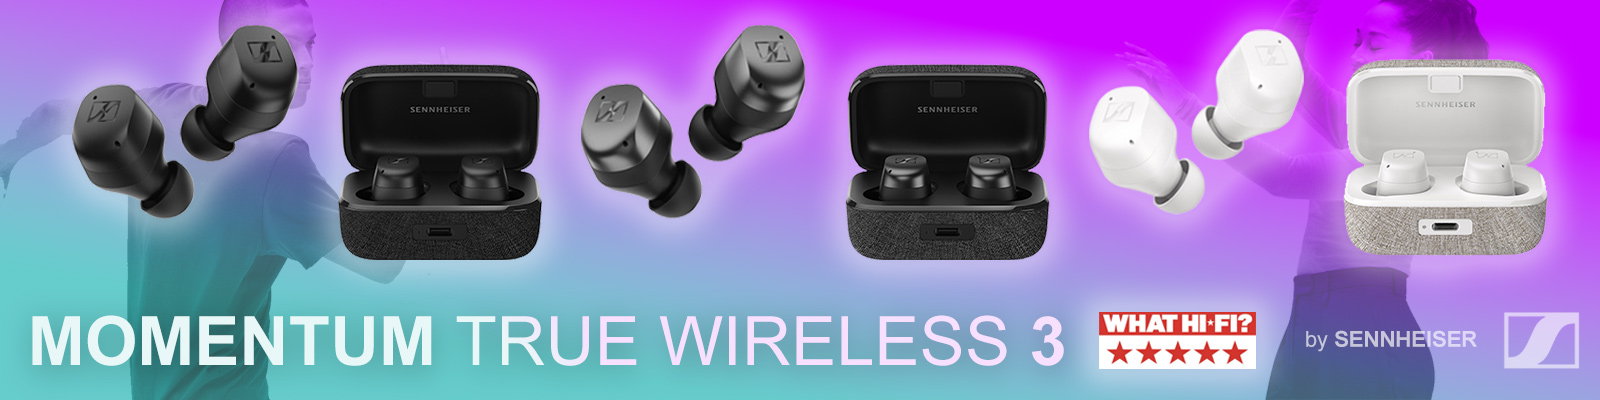 NEW Momentum True Wireless 3 In-Ear Headphones, by Sennheiser | Audio Sanctuary, London